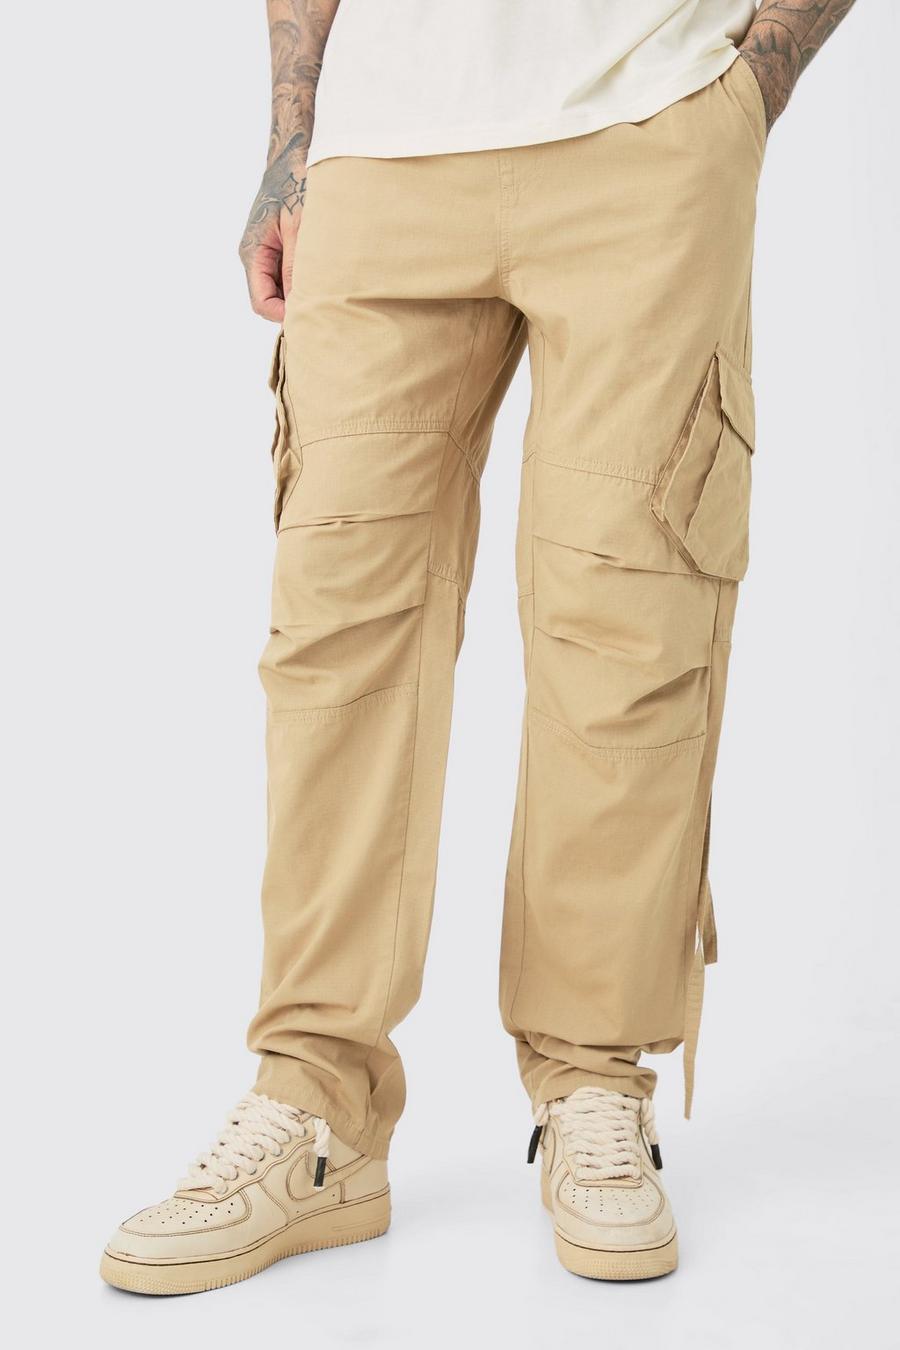 Pantaloni Cargo Tall dritti in nylon ripstop slavato con vita elasticizzata, Taupe